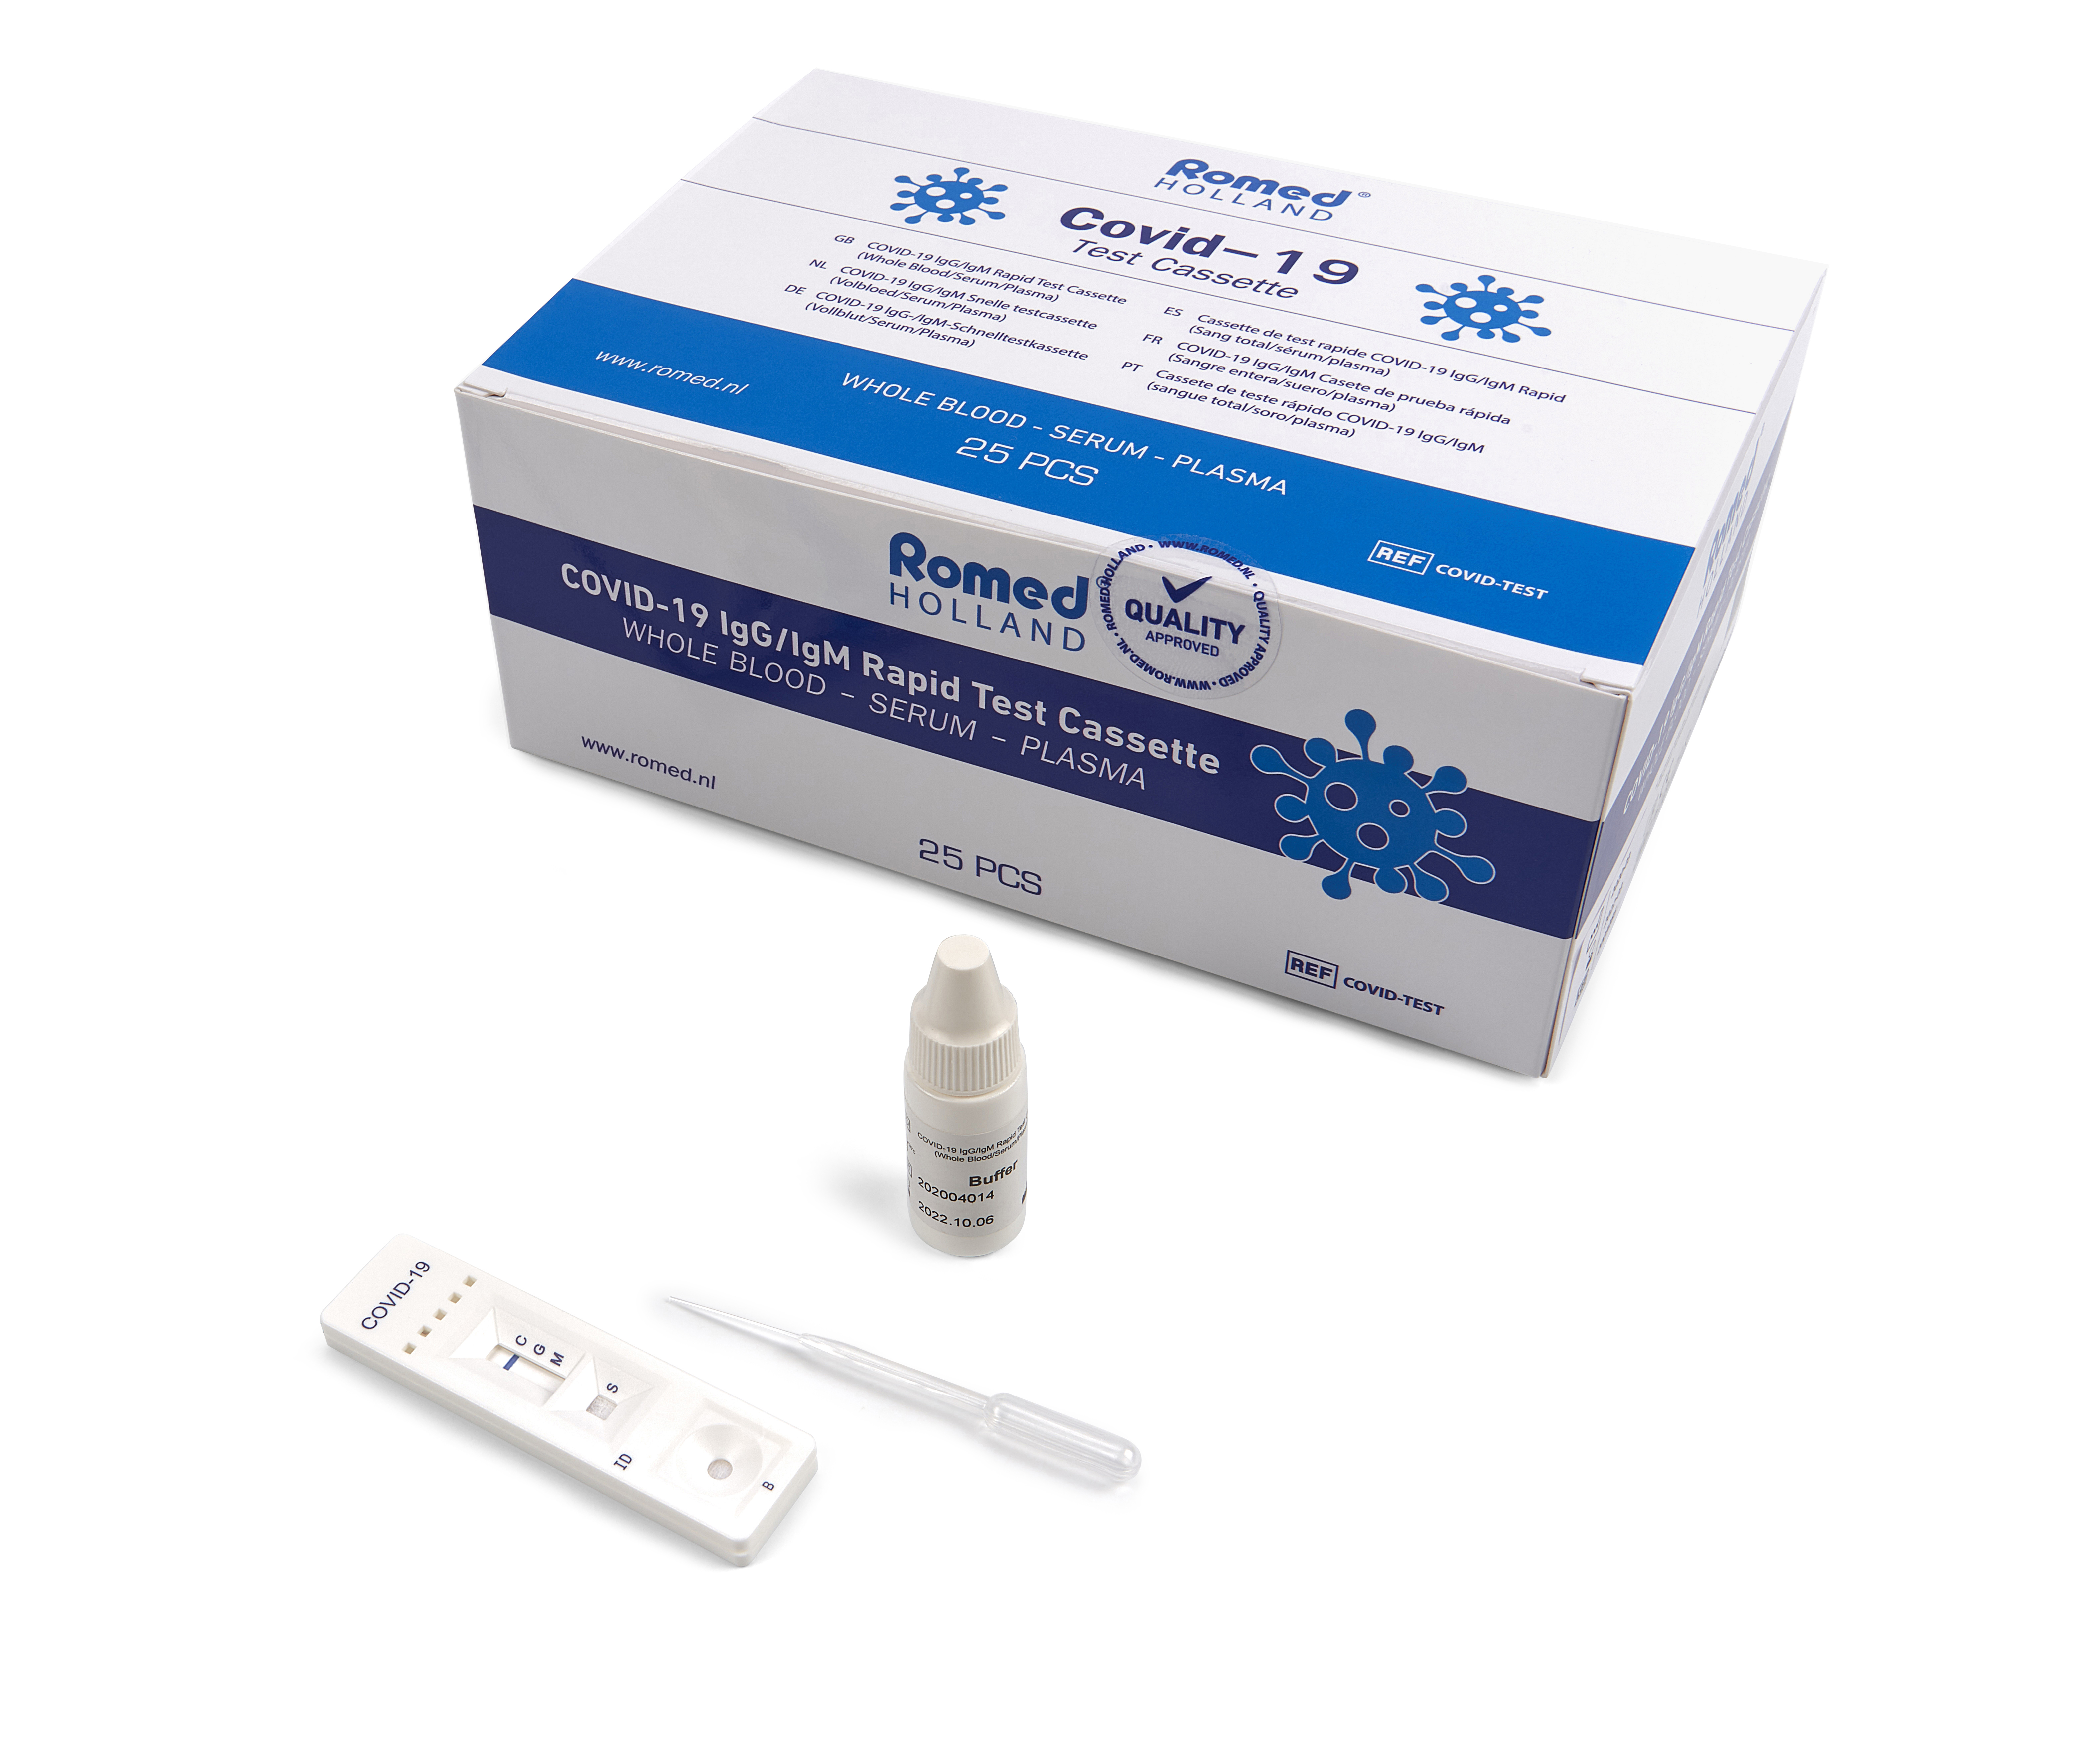 COVIDTEST Romed COVID-19 serologisch Schnelltestkassette zum Nachweis von Antikörpern (lgG-/lgM). Dieser Test ist ein immunochromatografischer Festphasen-Test für den schnellen, qualitativen und differenziellen Nachweis von lgG- und lgM-Antikörpern gegen das neuartige Coronavirus 2019 in menschlichem Vollblut, Serum oder Plasma.

Verpackt pro 25 Stück in einer Innenverpackung, 1250 Stück pro Karton.